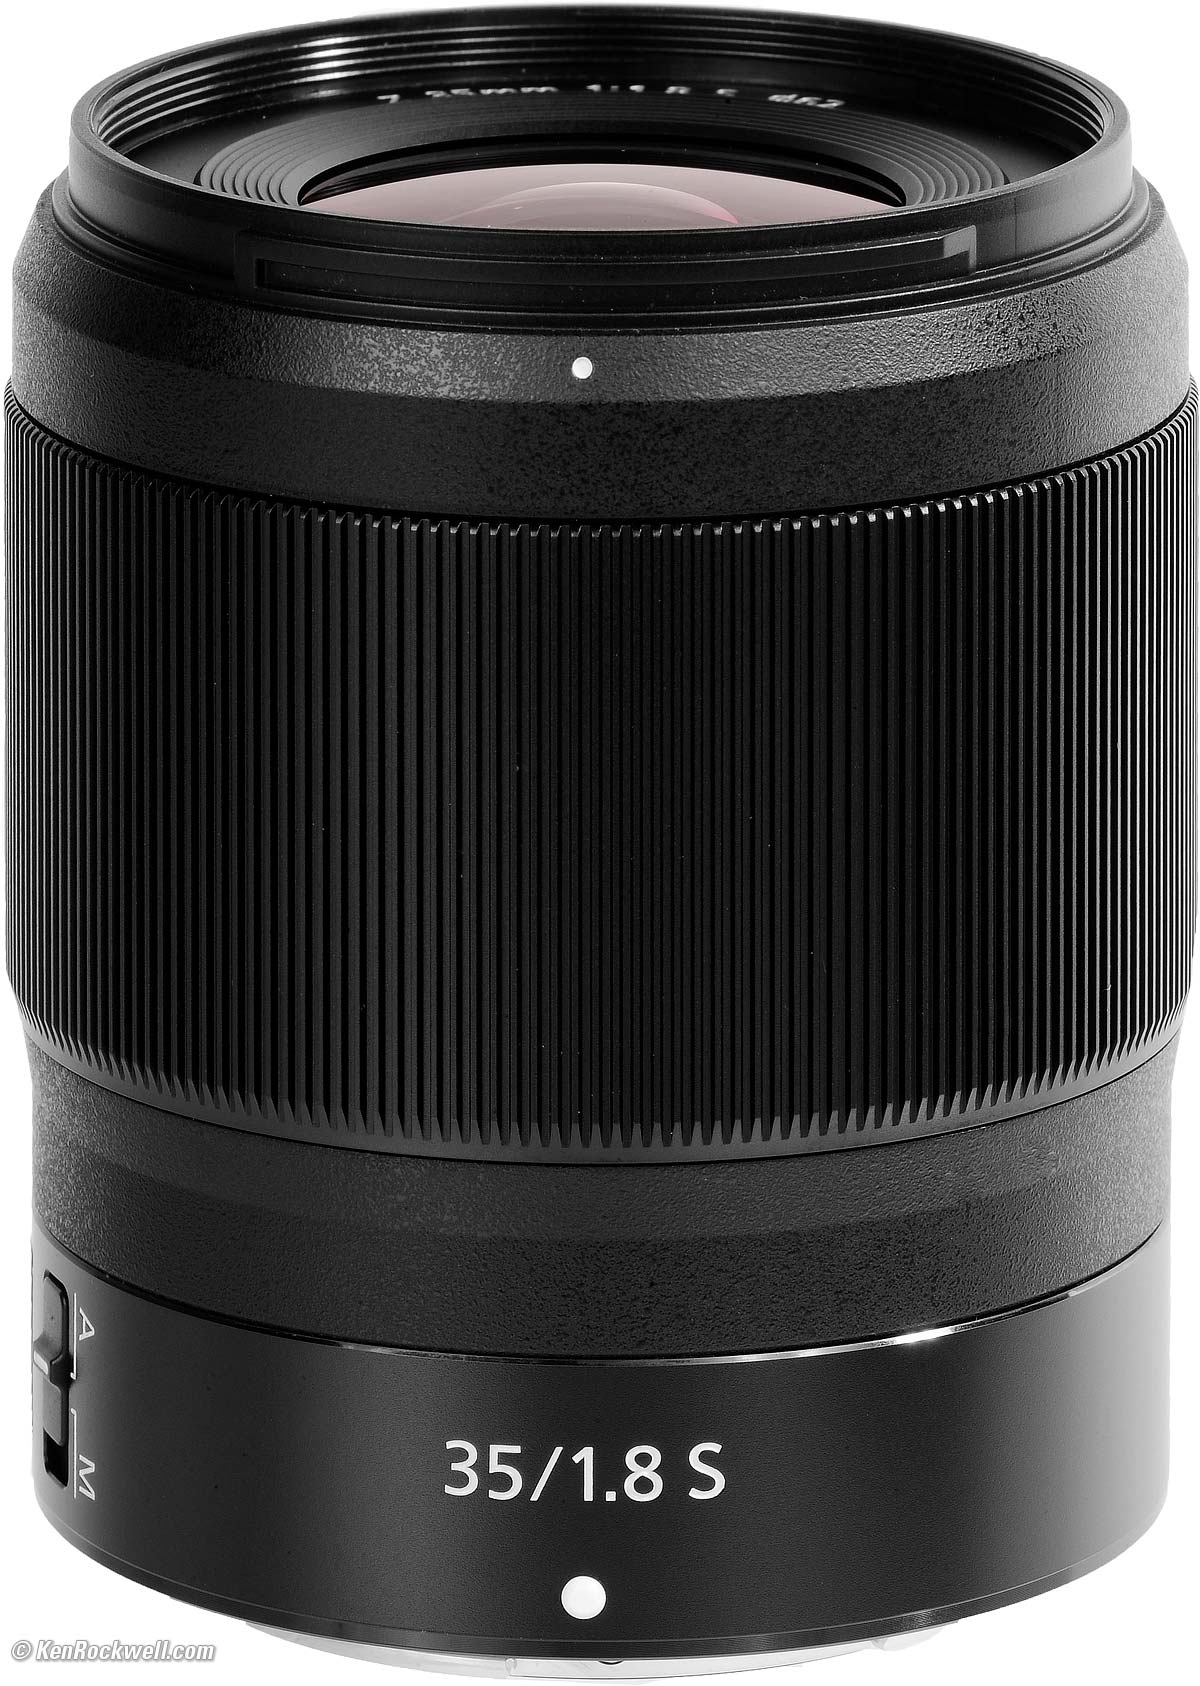 Nikon Z 35mm f/1.8 Review